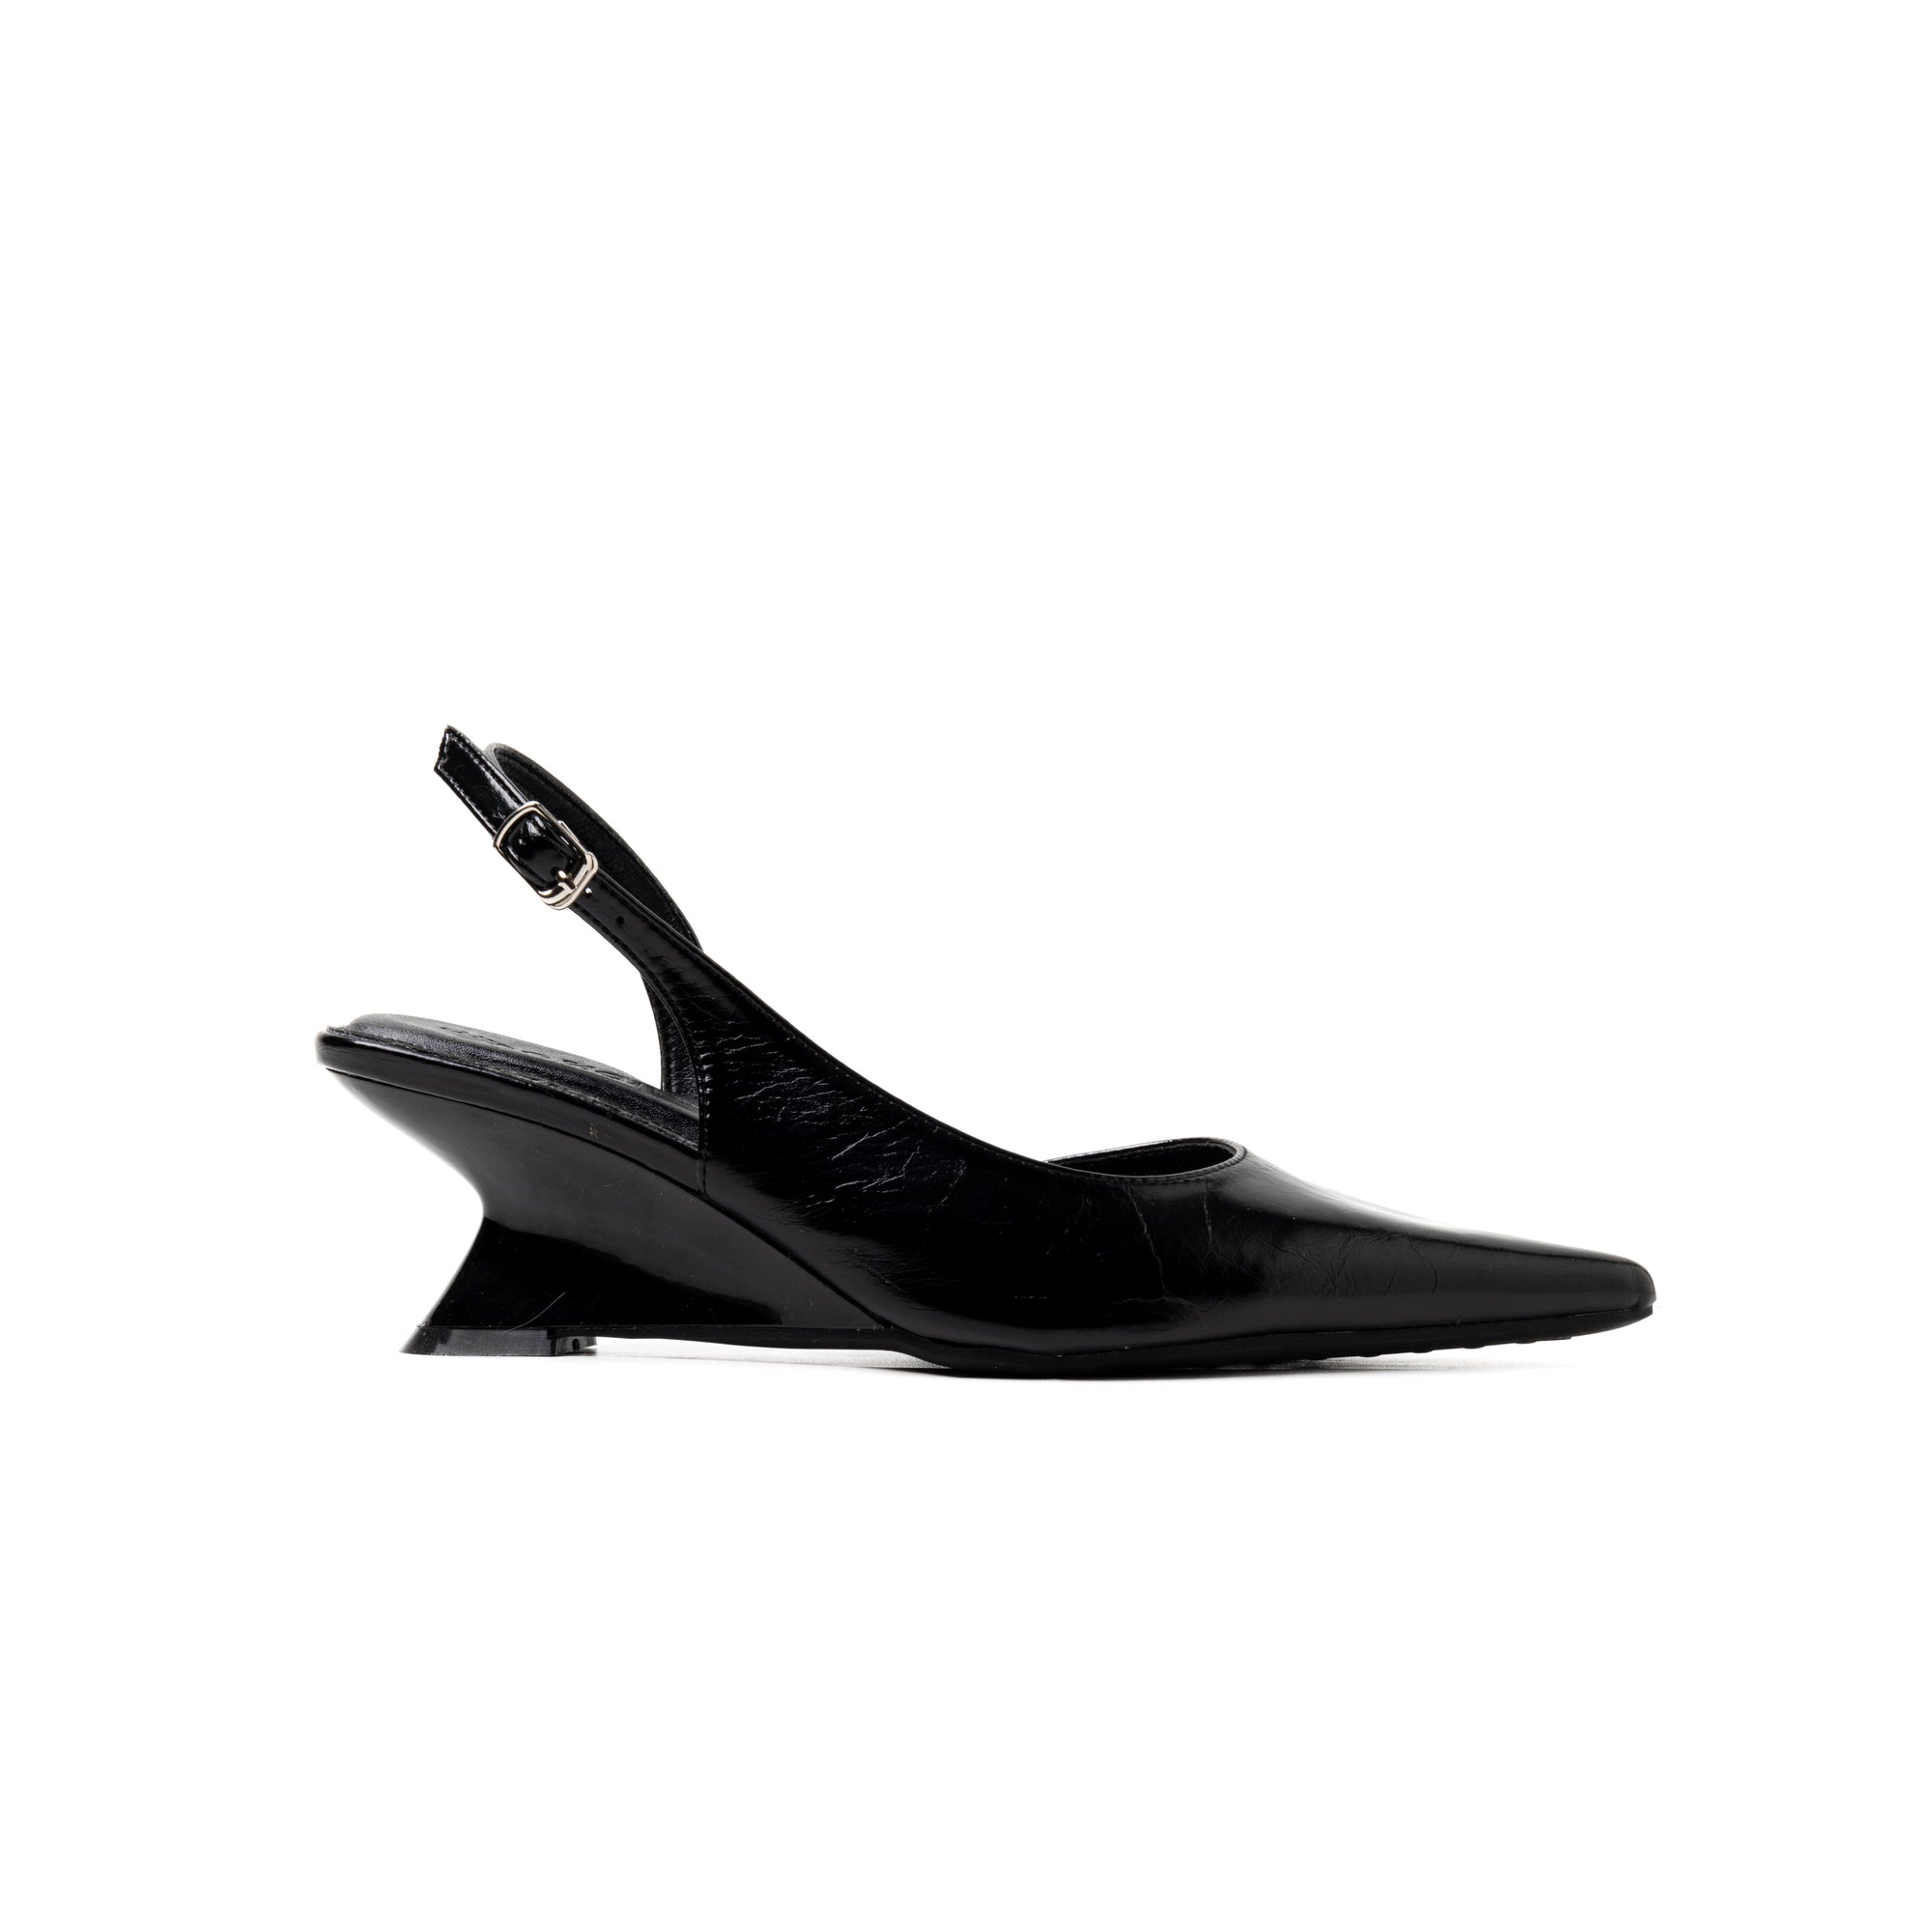 Welda Wedge Heels Jet Black - PowerPad™